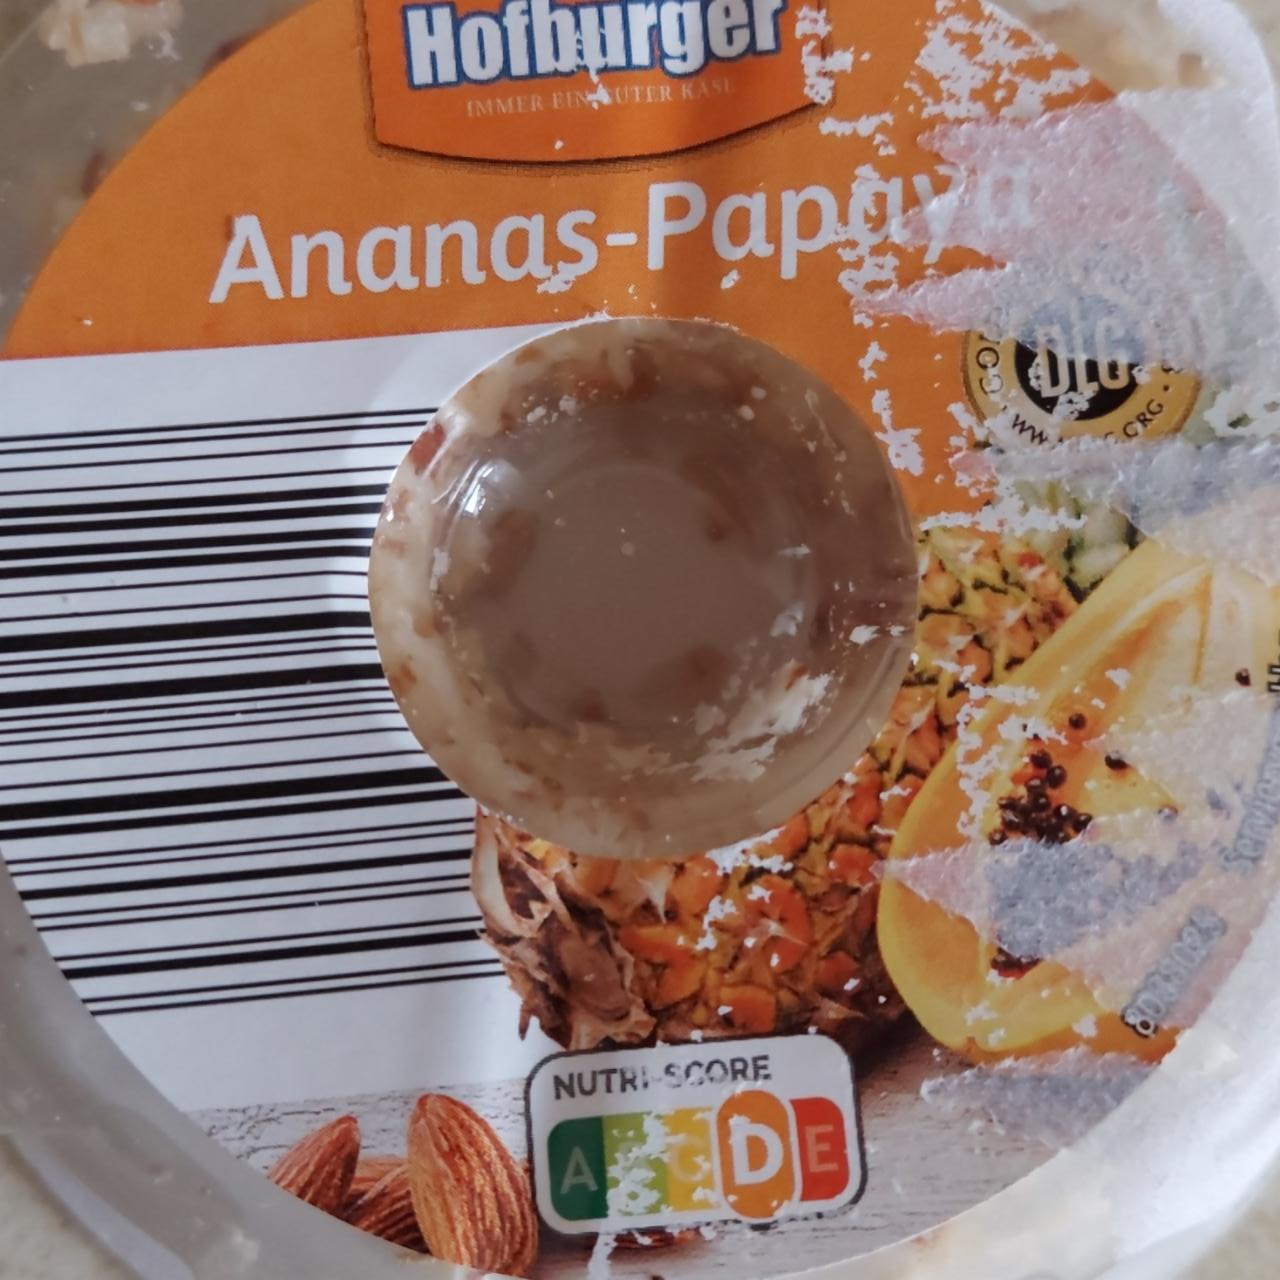 Фото - Ananas-papaya ring käse Hofburger